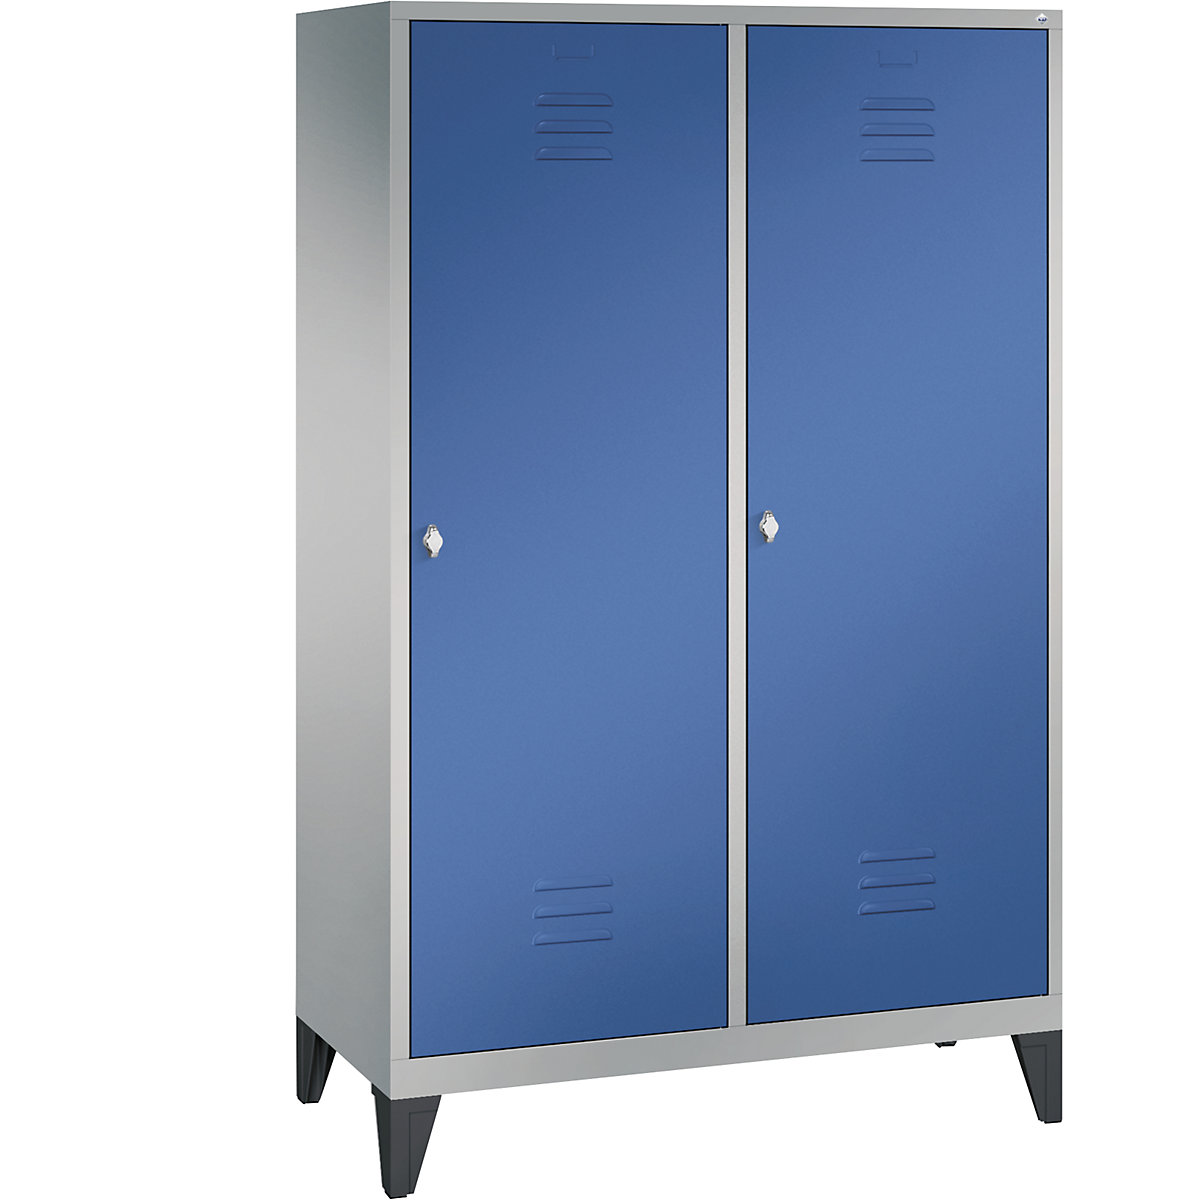 C+P – Šatní skříň s nohami CLASSIC s dveřmi přes 2 oddíly, 4 oddíly, šířka oddílu 300 mm, bílý hliník / enciánová modrá